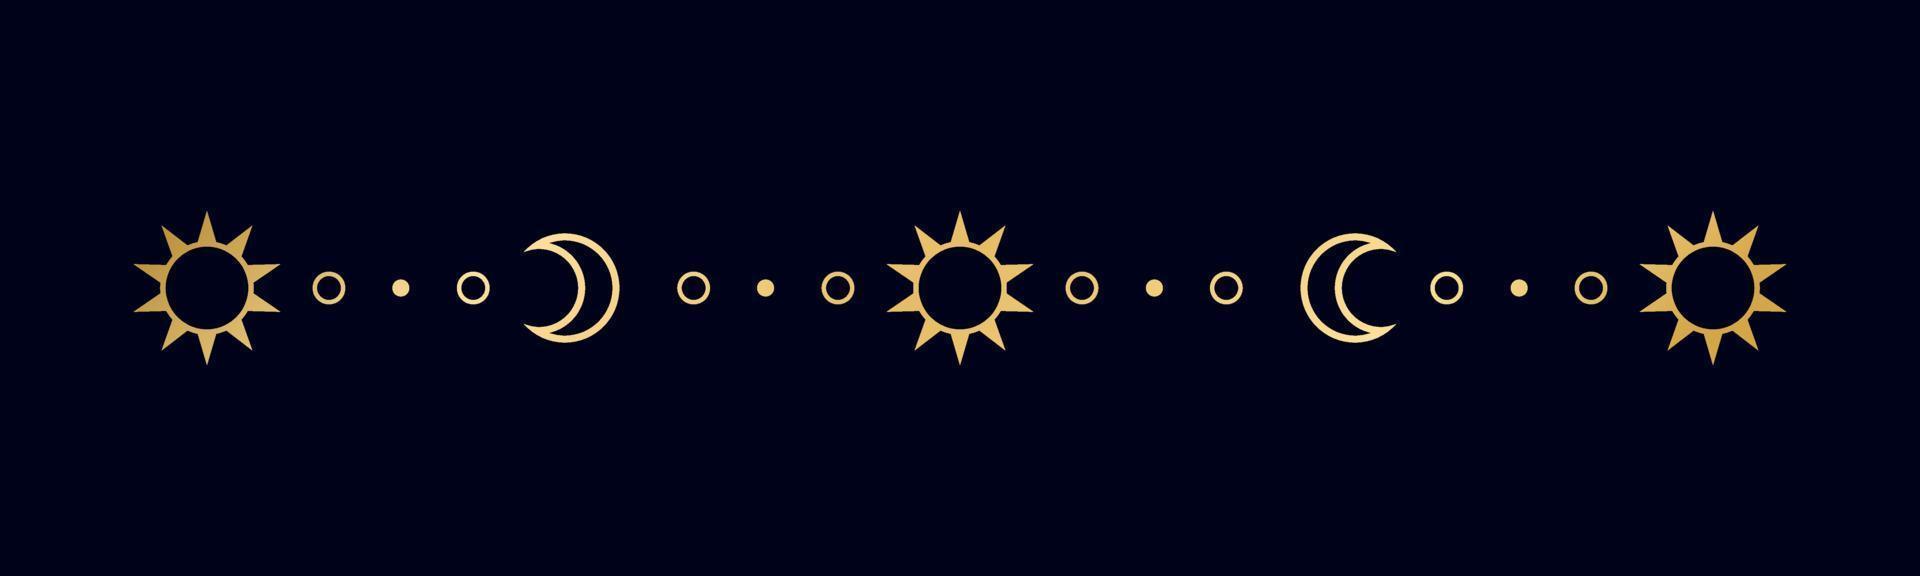 ouro celestial separador com sol, estrelas, lua fases, crescentes. ornamentado boho místico divisor decorativo elemento vetor